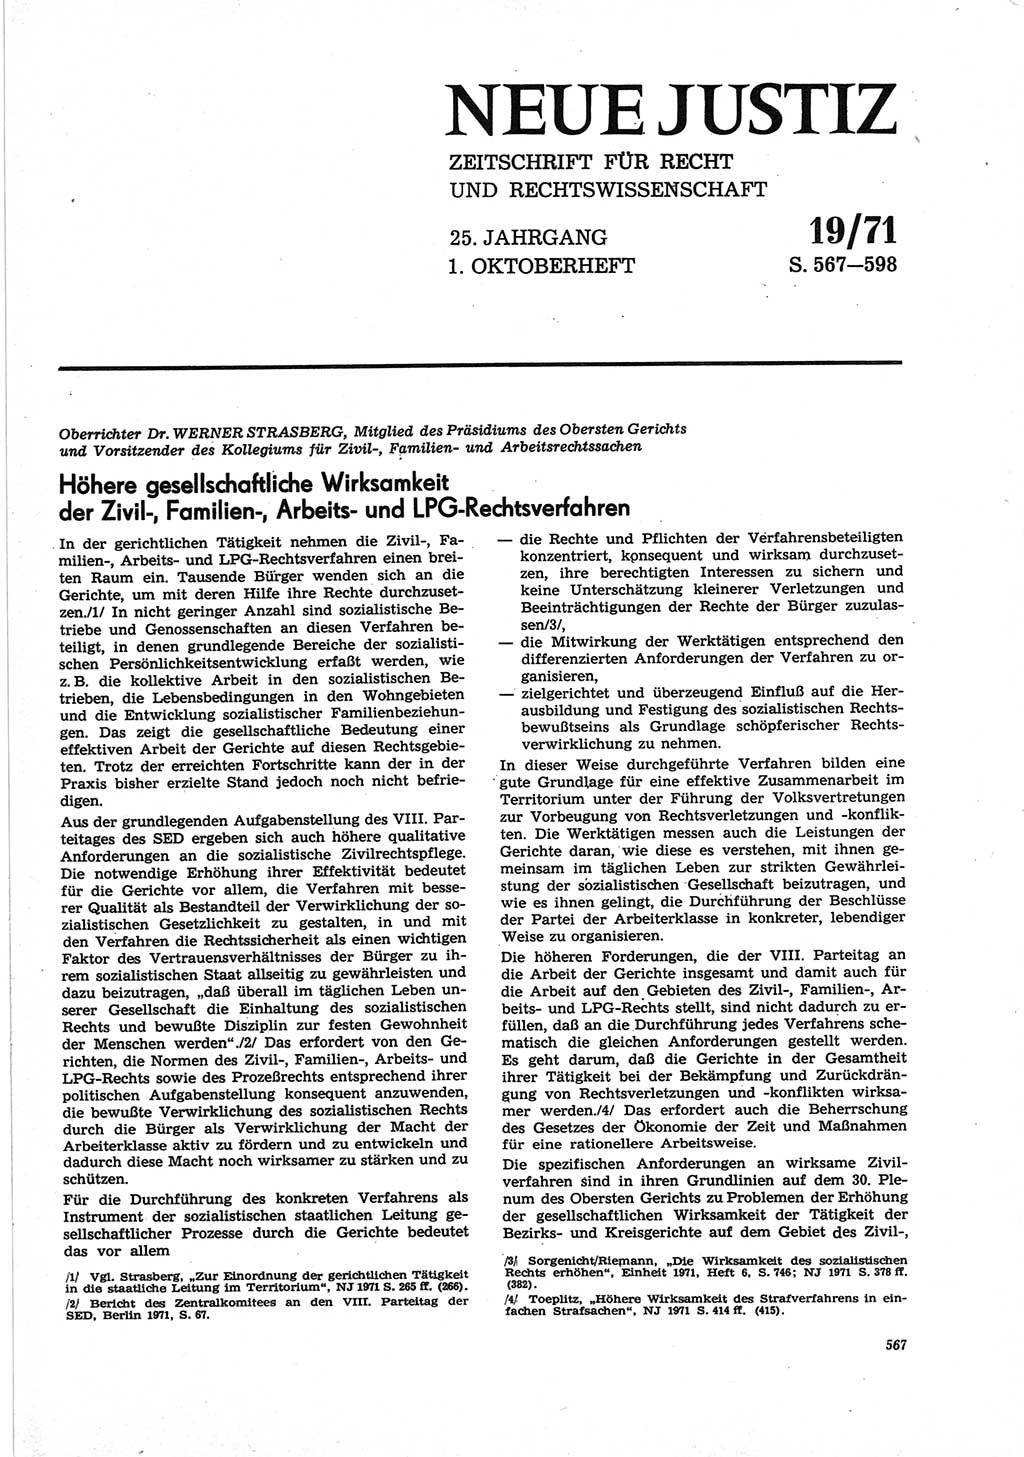 Neue Justiz (NJ), Zeitschrift für Recht und Rechtswissenschaft [Deutsche Demokratische Republik (DDR)], 25. Jahrgang 1971, Seite 567 (NJ DDR 1971, S. 567)